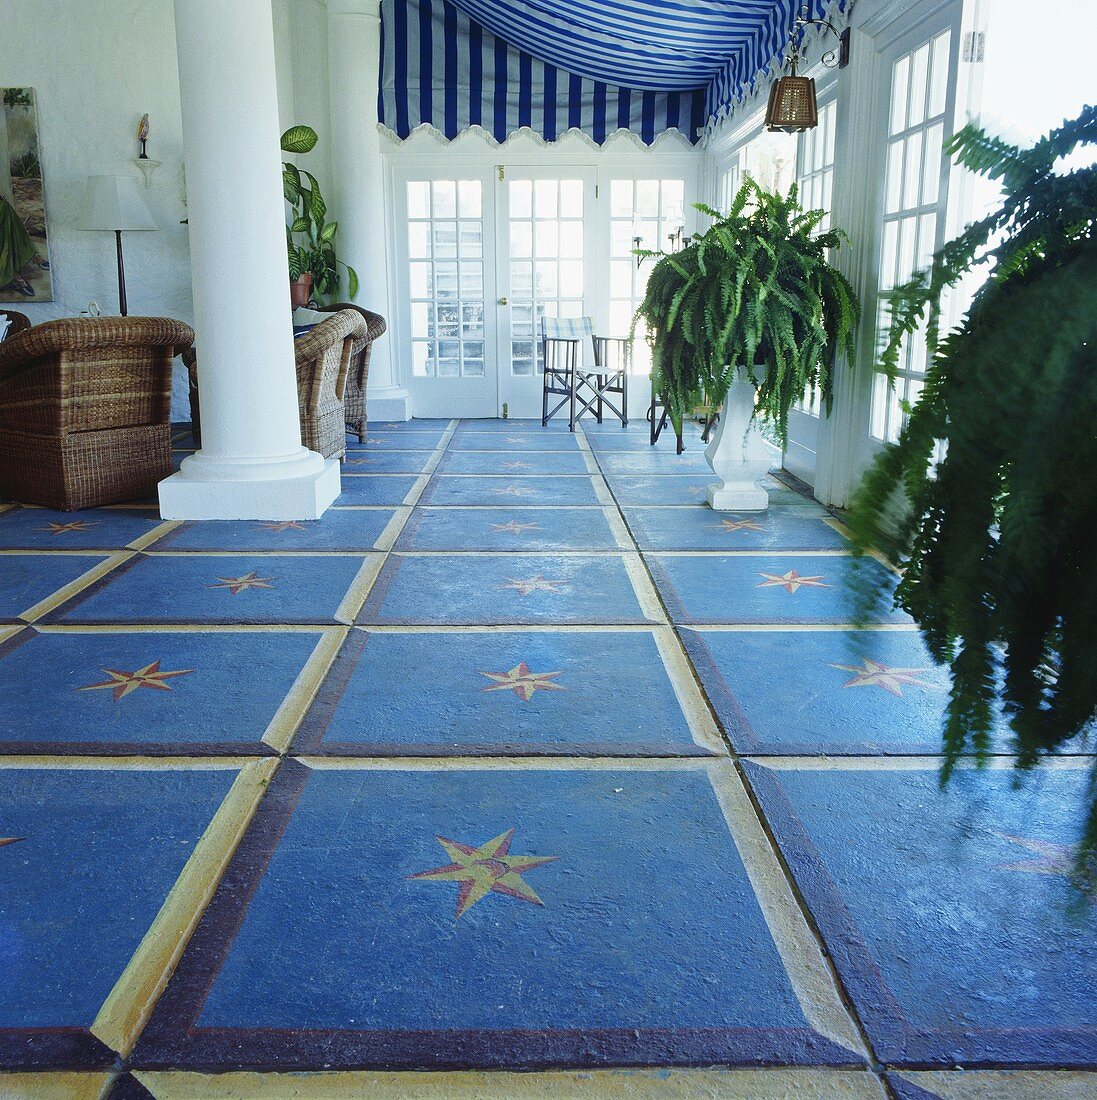 Blaue Bodenfliesen in der Halle eines karibischen Hauses